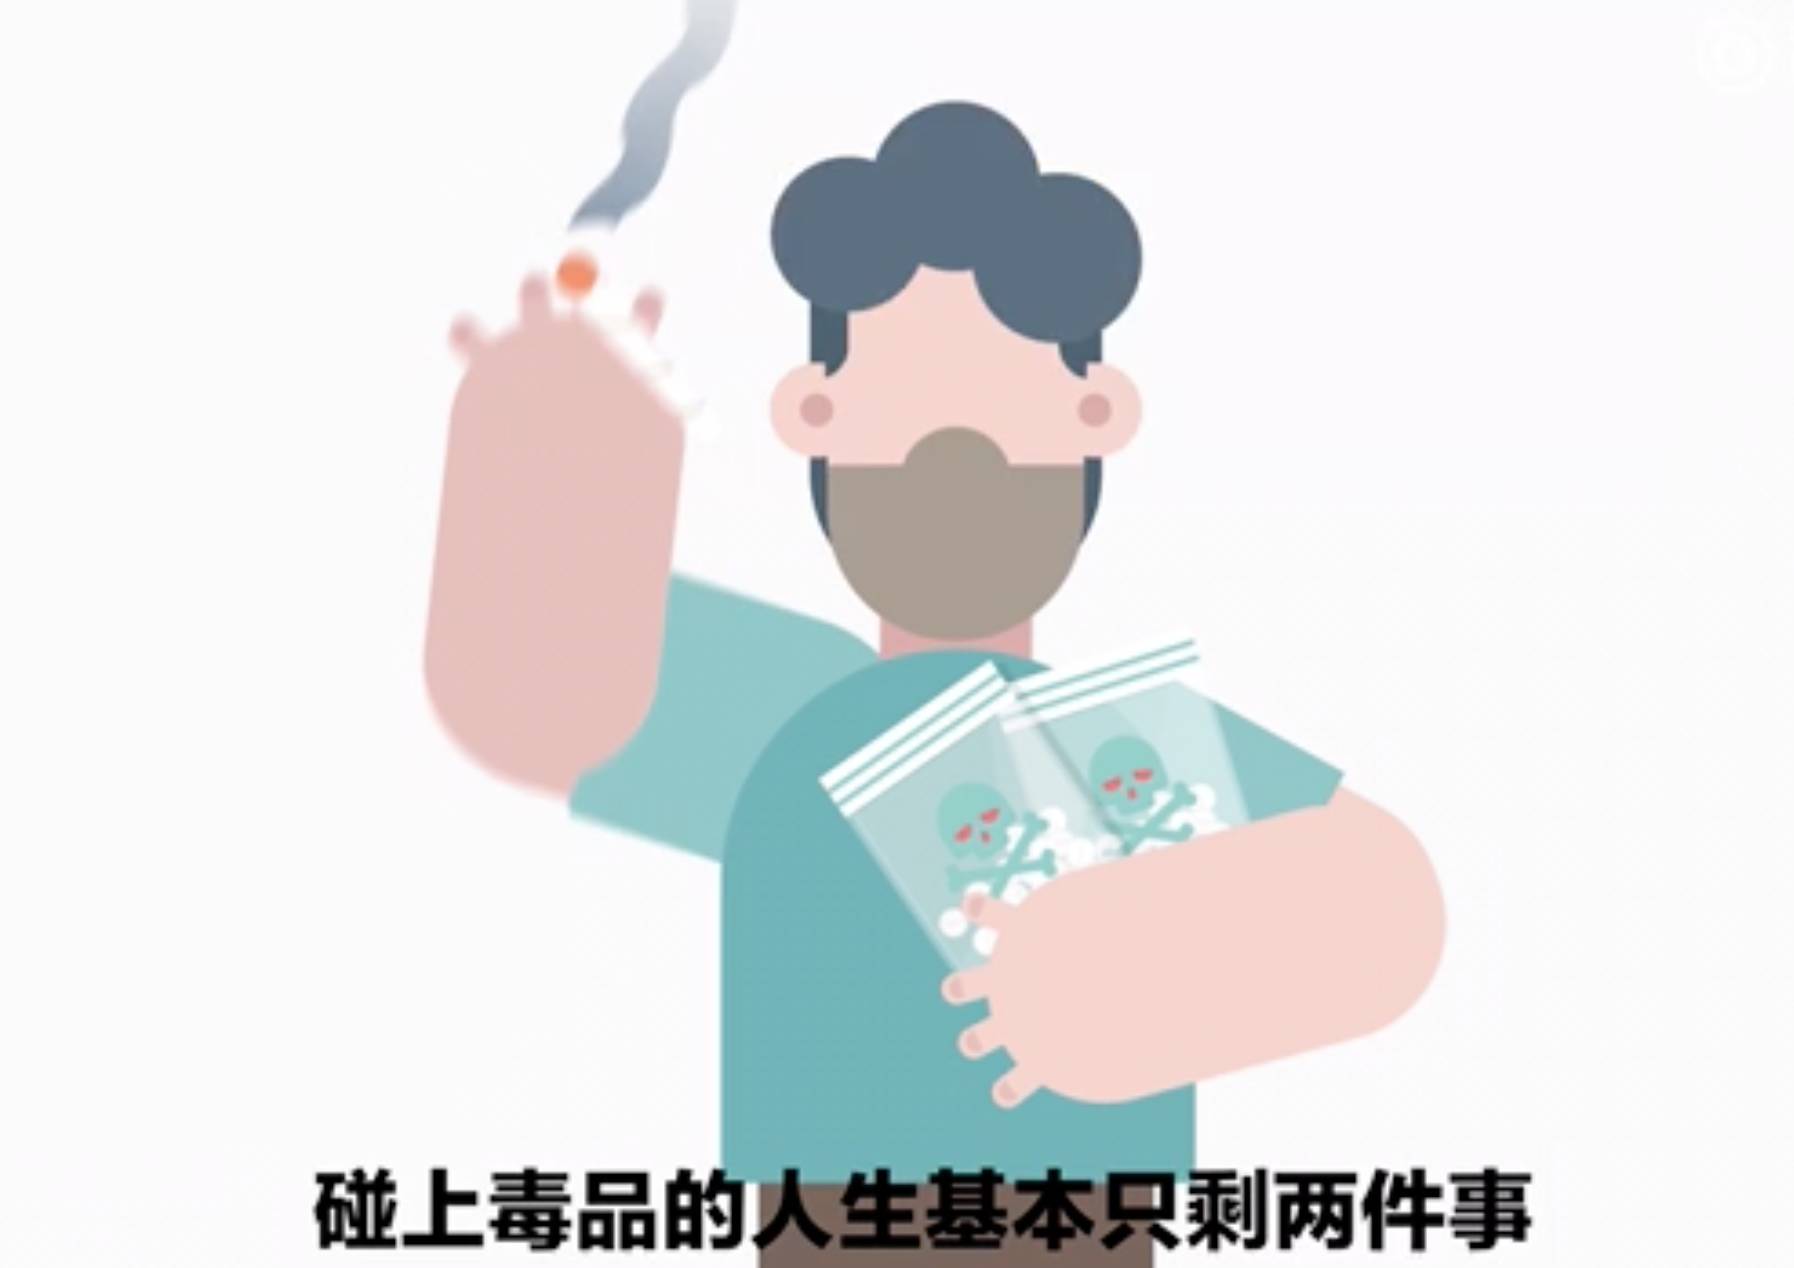 动画短片:四分钟看懂毒品的危害